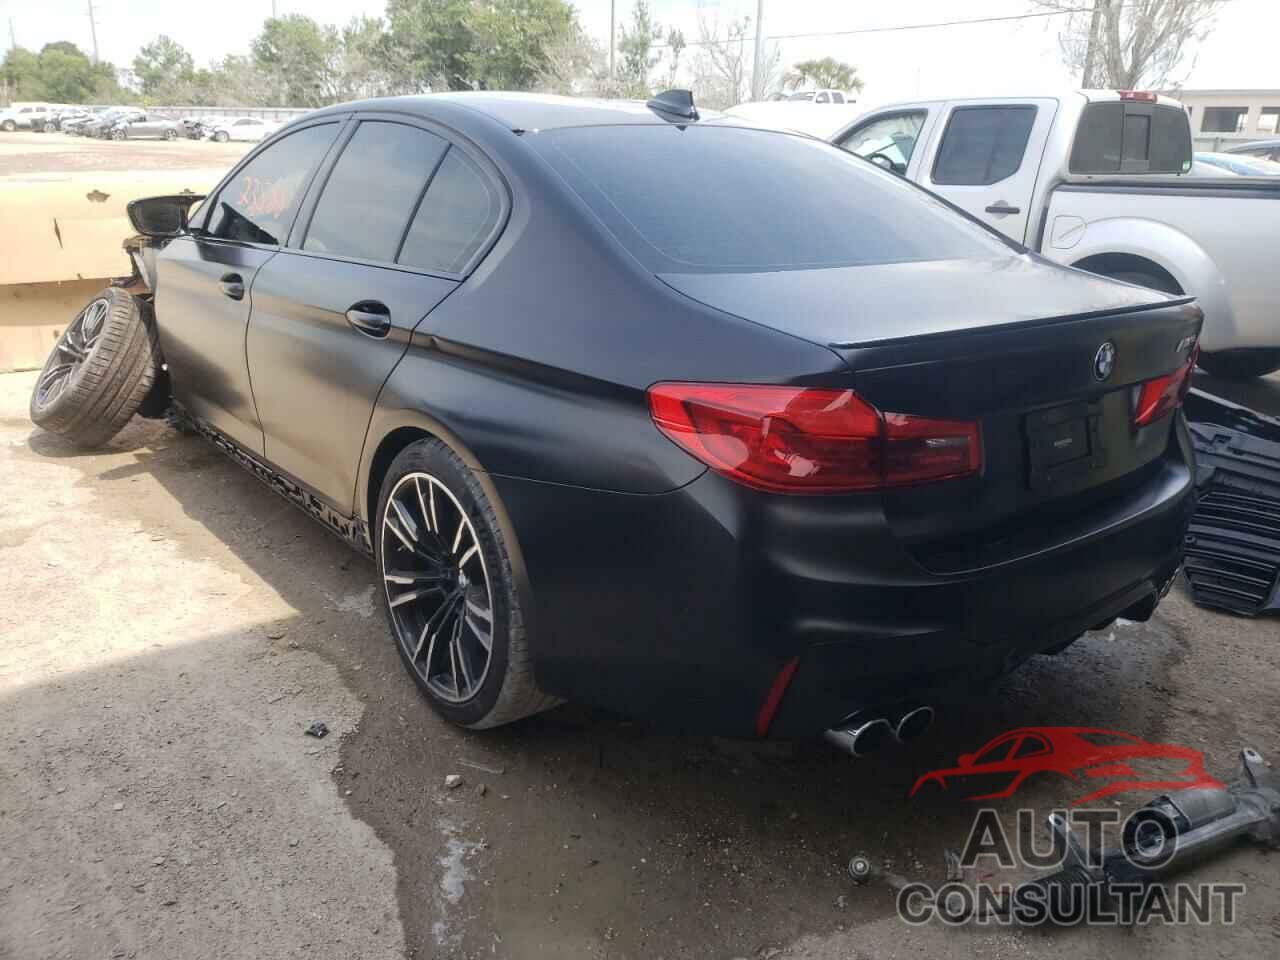 BMW M5 2019 - WBSJF0C50KB285163